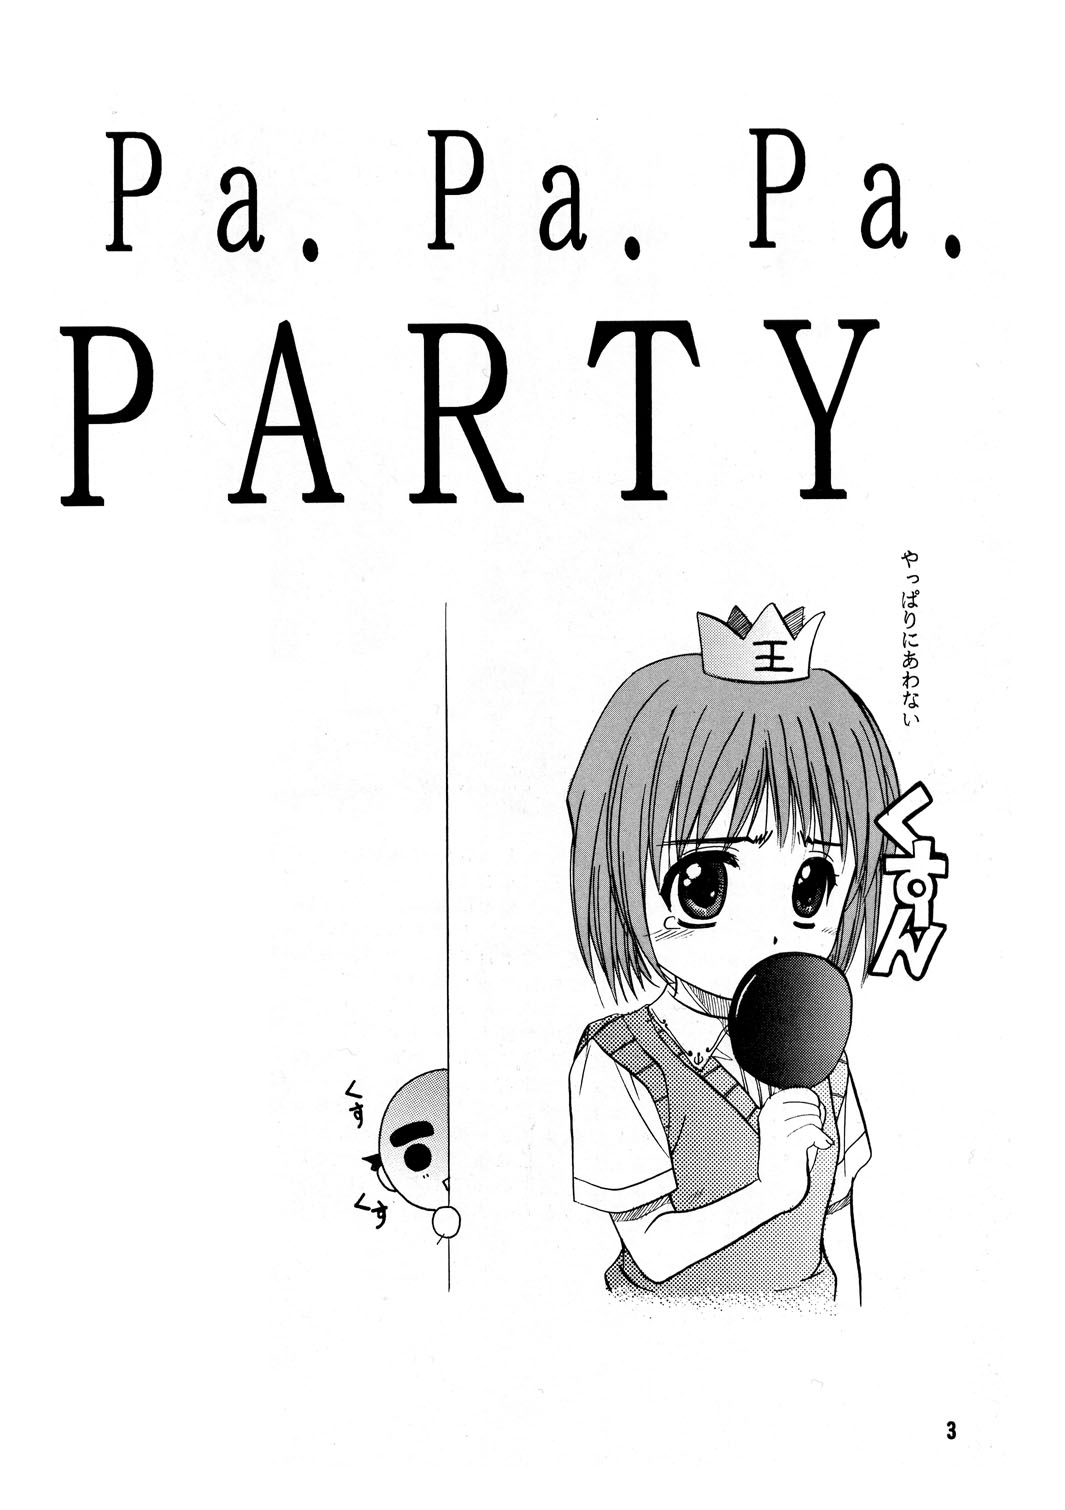 [自由ヶ丘商店街 (平木直利)] Pa.Pa.Pa.Pa. PARTY (こみっくパーティー)